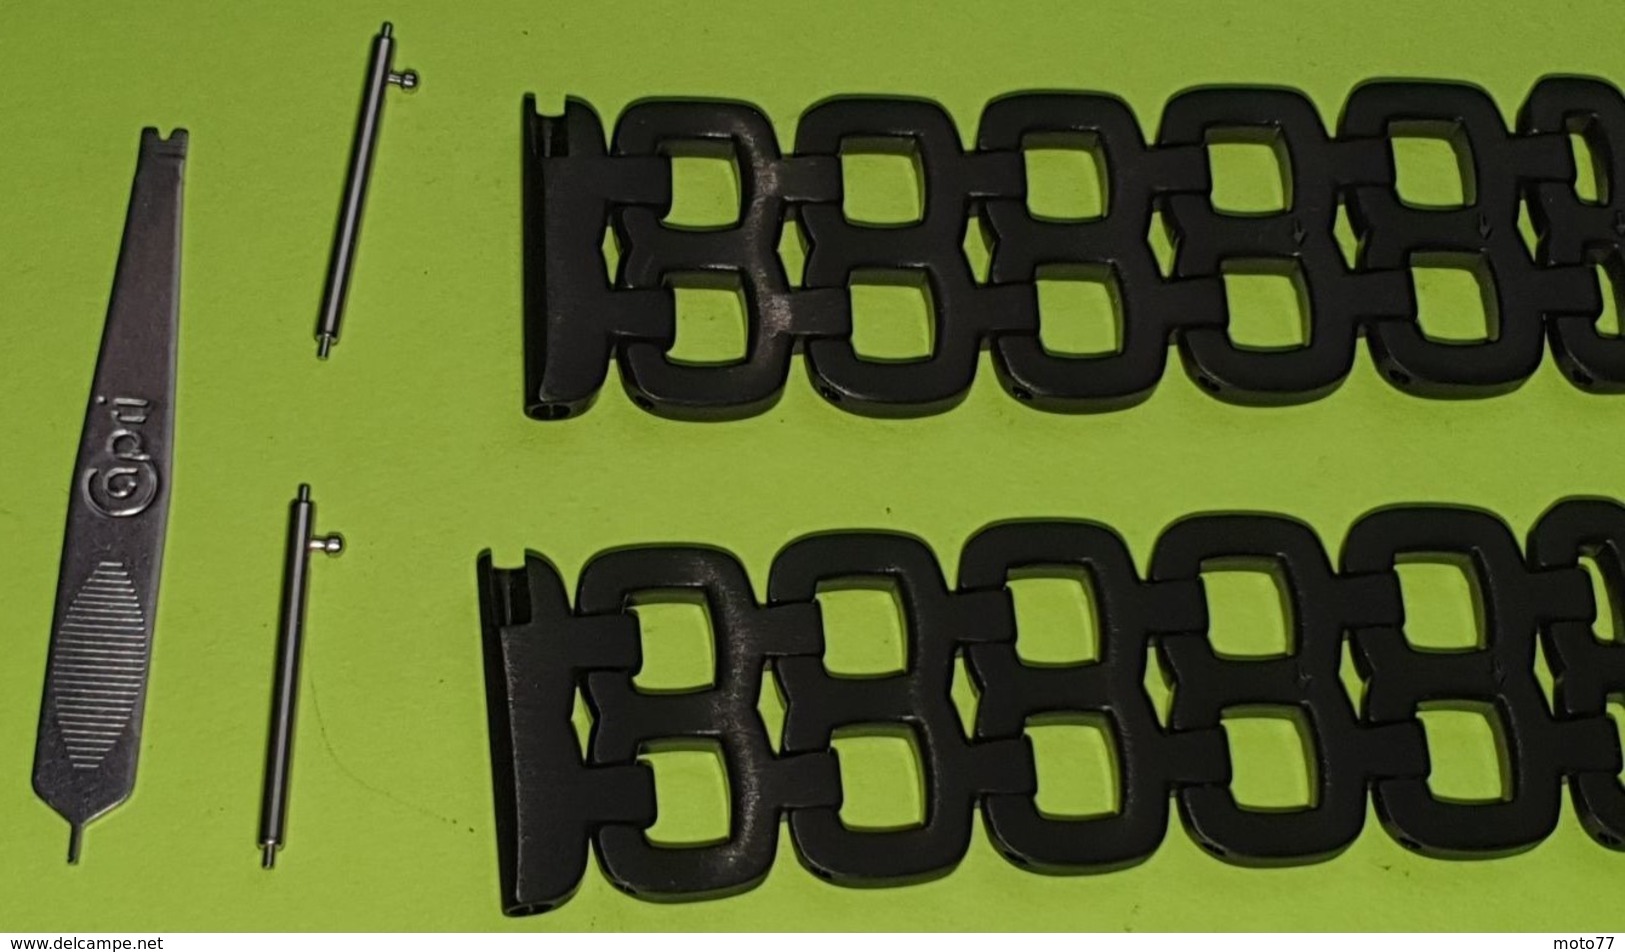 BRACELET pour Montre - Métal noir ajouré - Fermoir à clips - Taille 22 - montage rapide - Longueur total 17.5 cm - Neuf